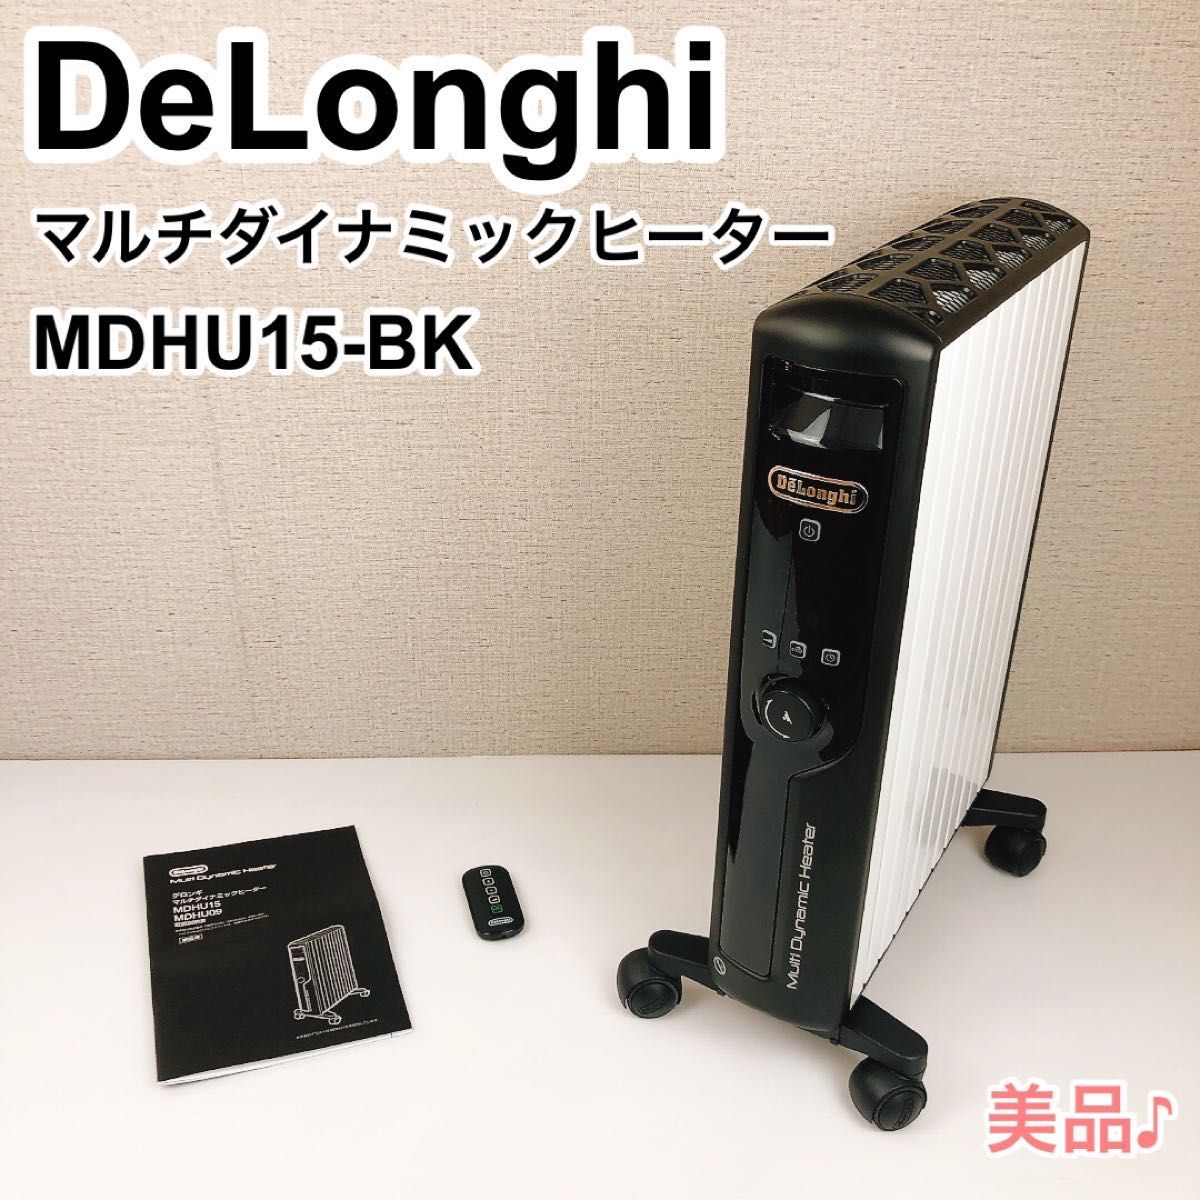 最新デザインの DeLonghi デロンギマルチダイナミックヒーター MDHU15